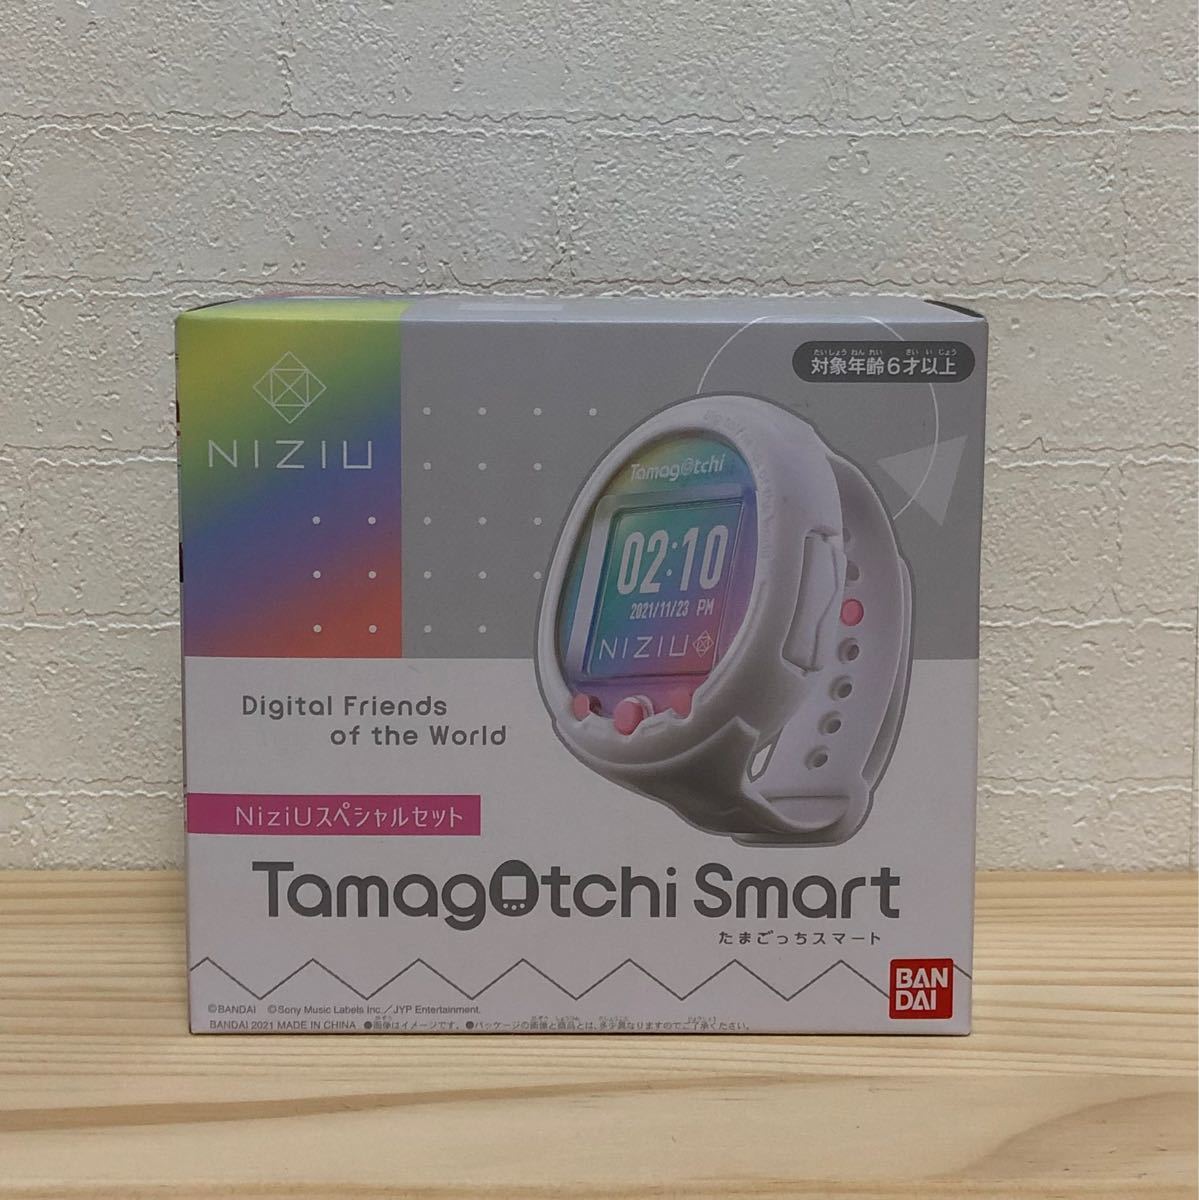 Tamagotchi Smart NiziUスペシャルセット